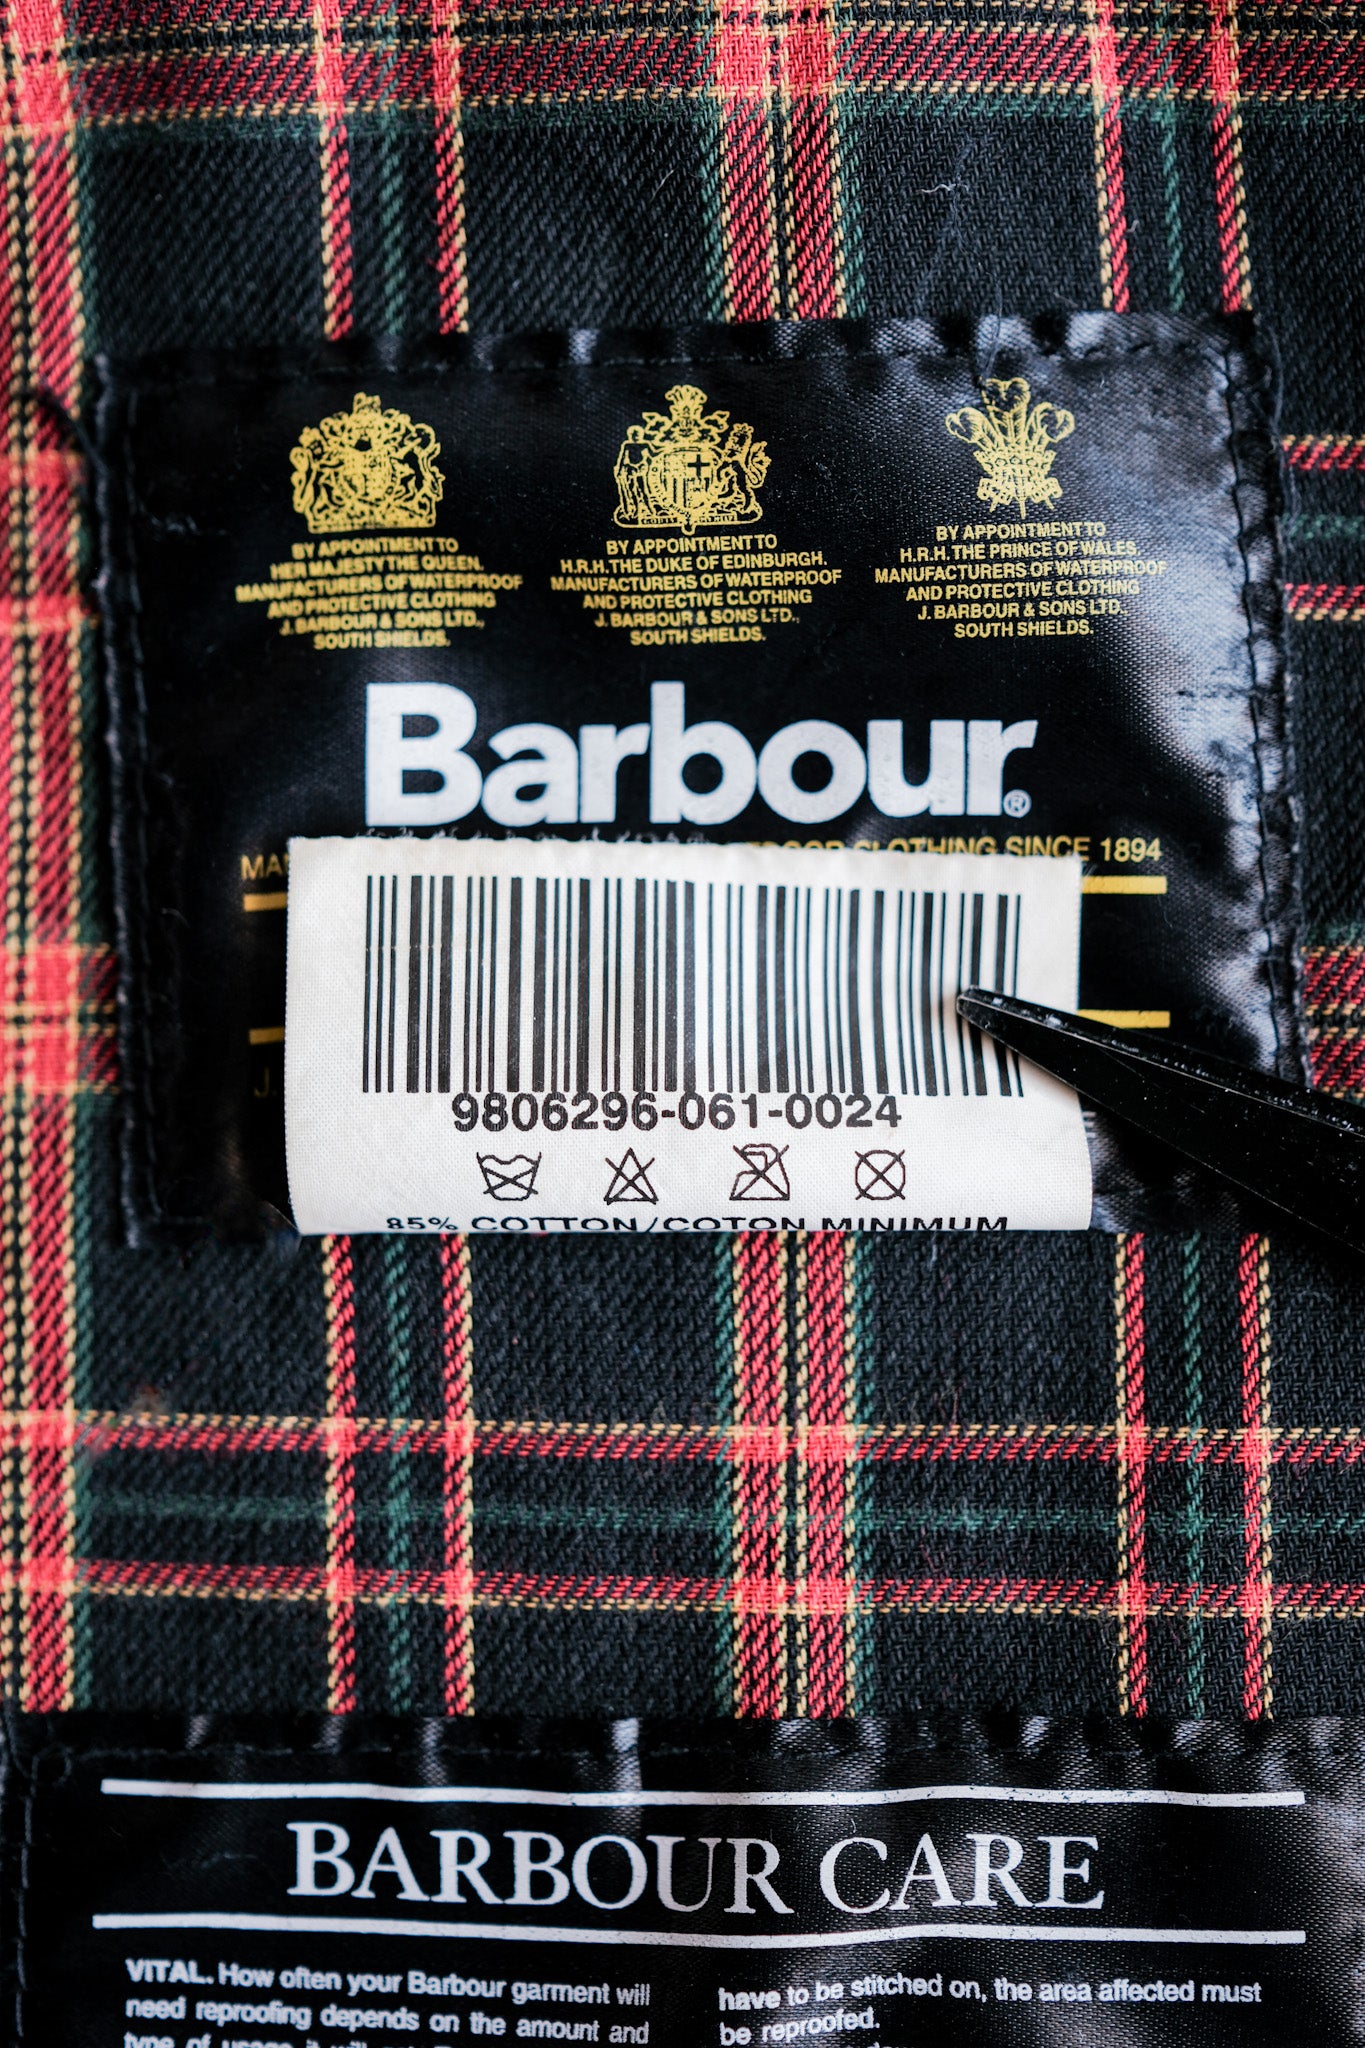 [~ 90's] Vintage Barbour "Wax Cotton Blouson" 3 Crest Size.Large